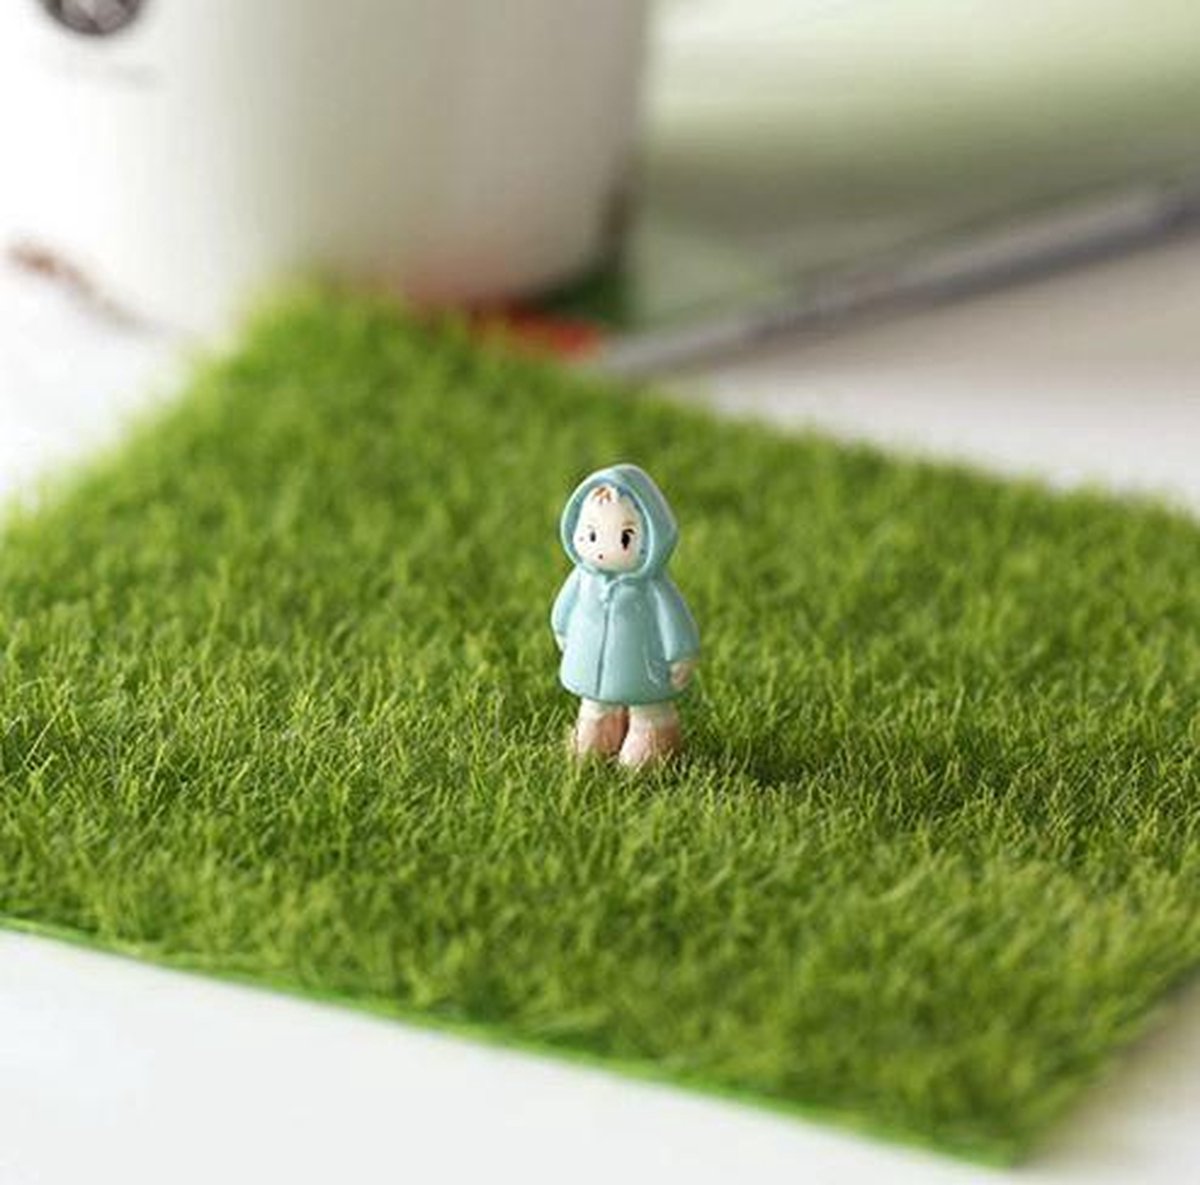 Herbe miniature - Jardin de maison de poupée - Décoration de